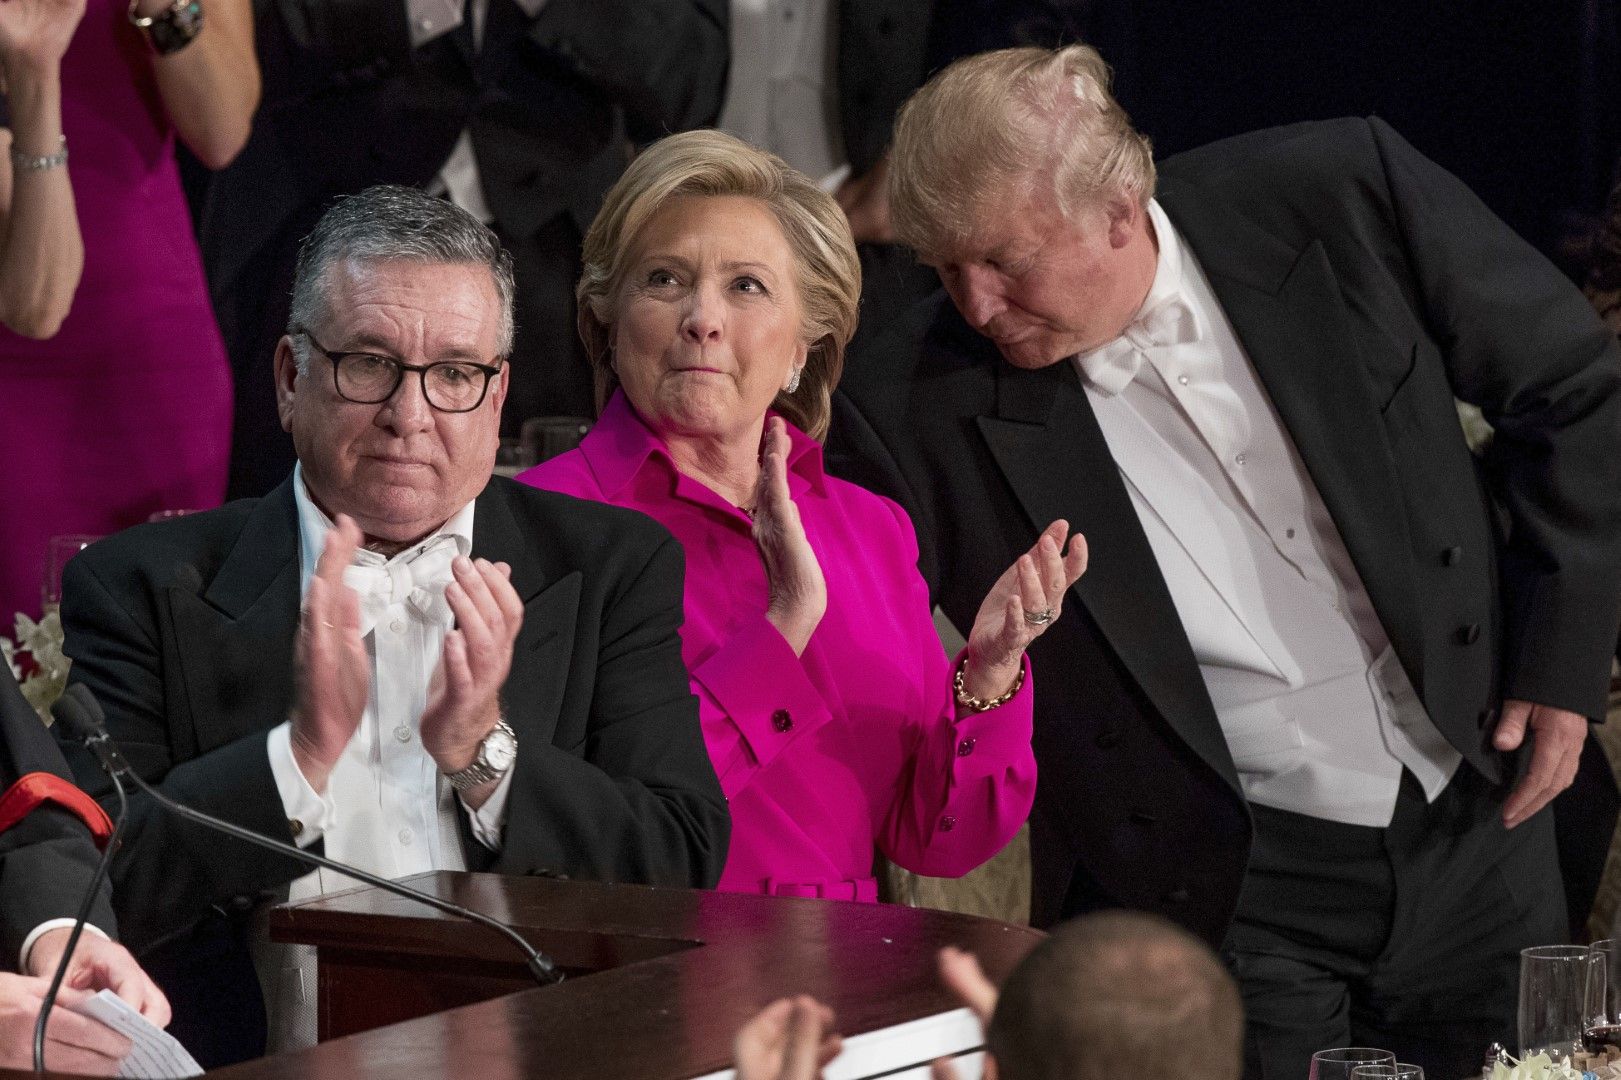 20 октомври 2016 г., на снимката са Алфред Е. Смит IV, вляво, кандидатът за президент на Демократическата партия Хилари Клинтън и кандидатът за президент на Републиканската партия Доналд Тръмп, вдясно, по време на 71-та годишна вечеря на Възпоменателна Фо